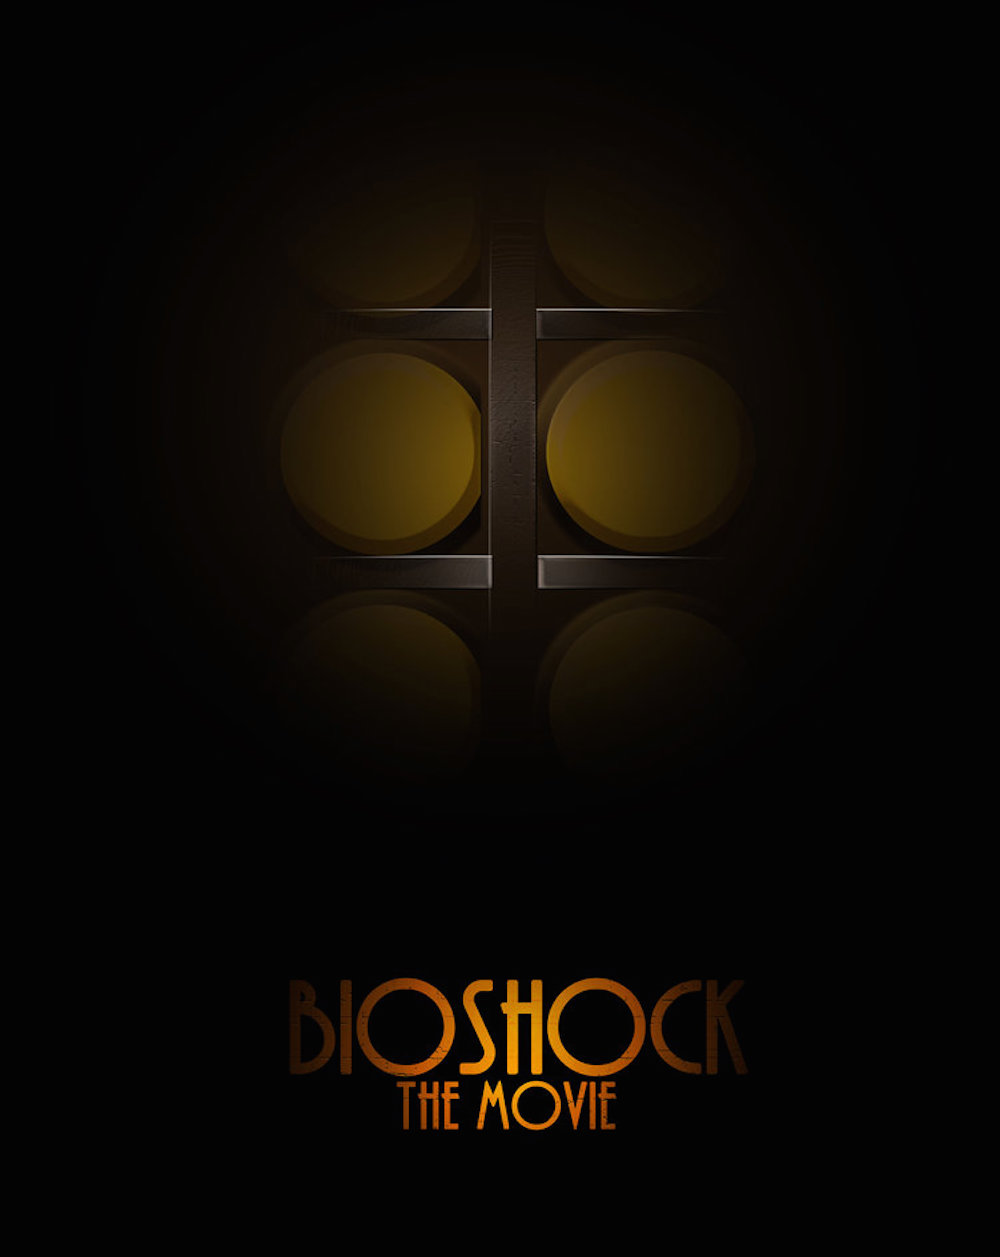 Bioshock Movie Concept Art